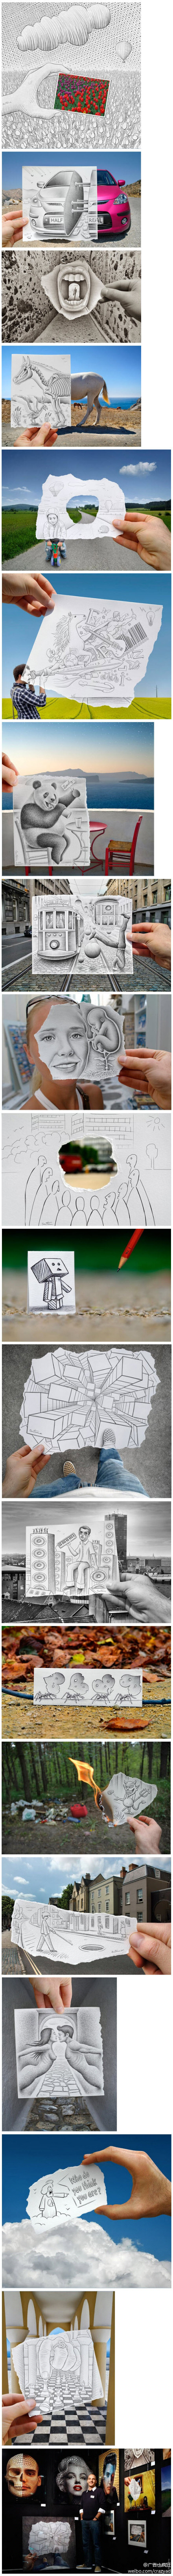 比利时艺术家本•海因（Ben Heine）将铅笔素描和真实的生活场景严丝缝合成精致的影像，他称之为“铅笔Vs相机”。